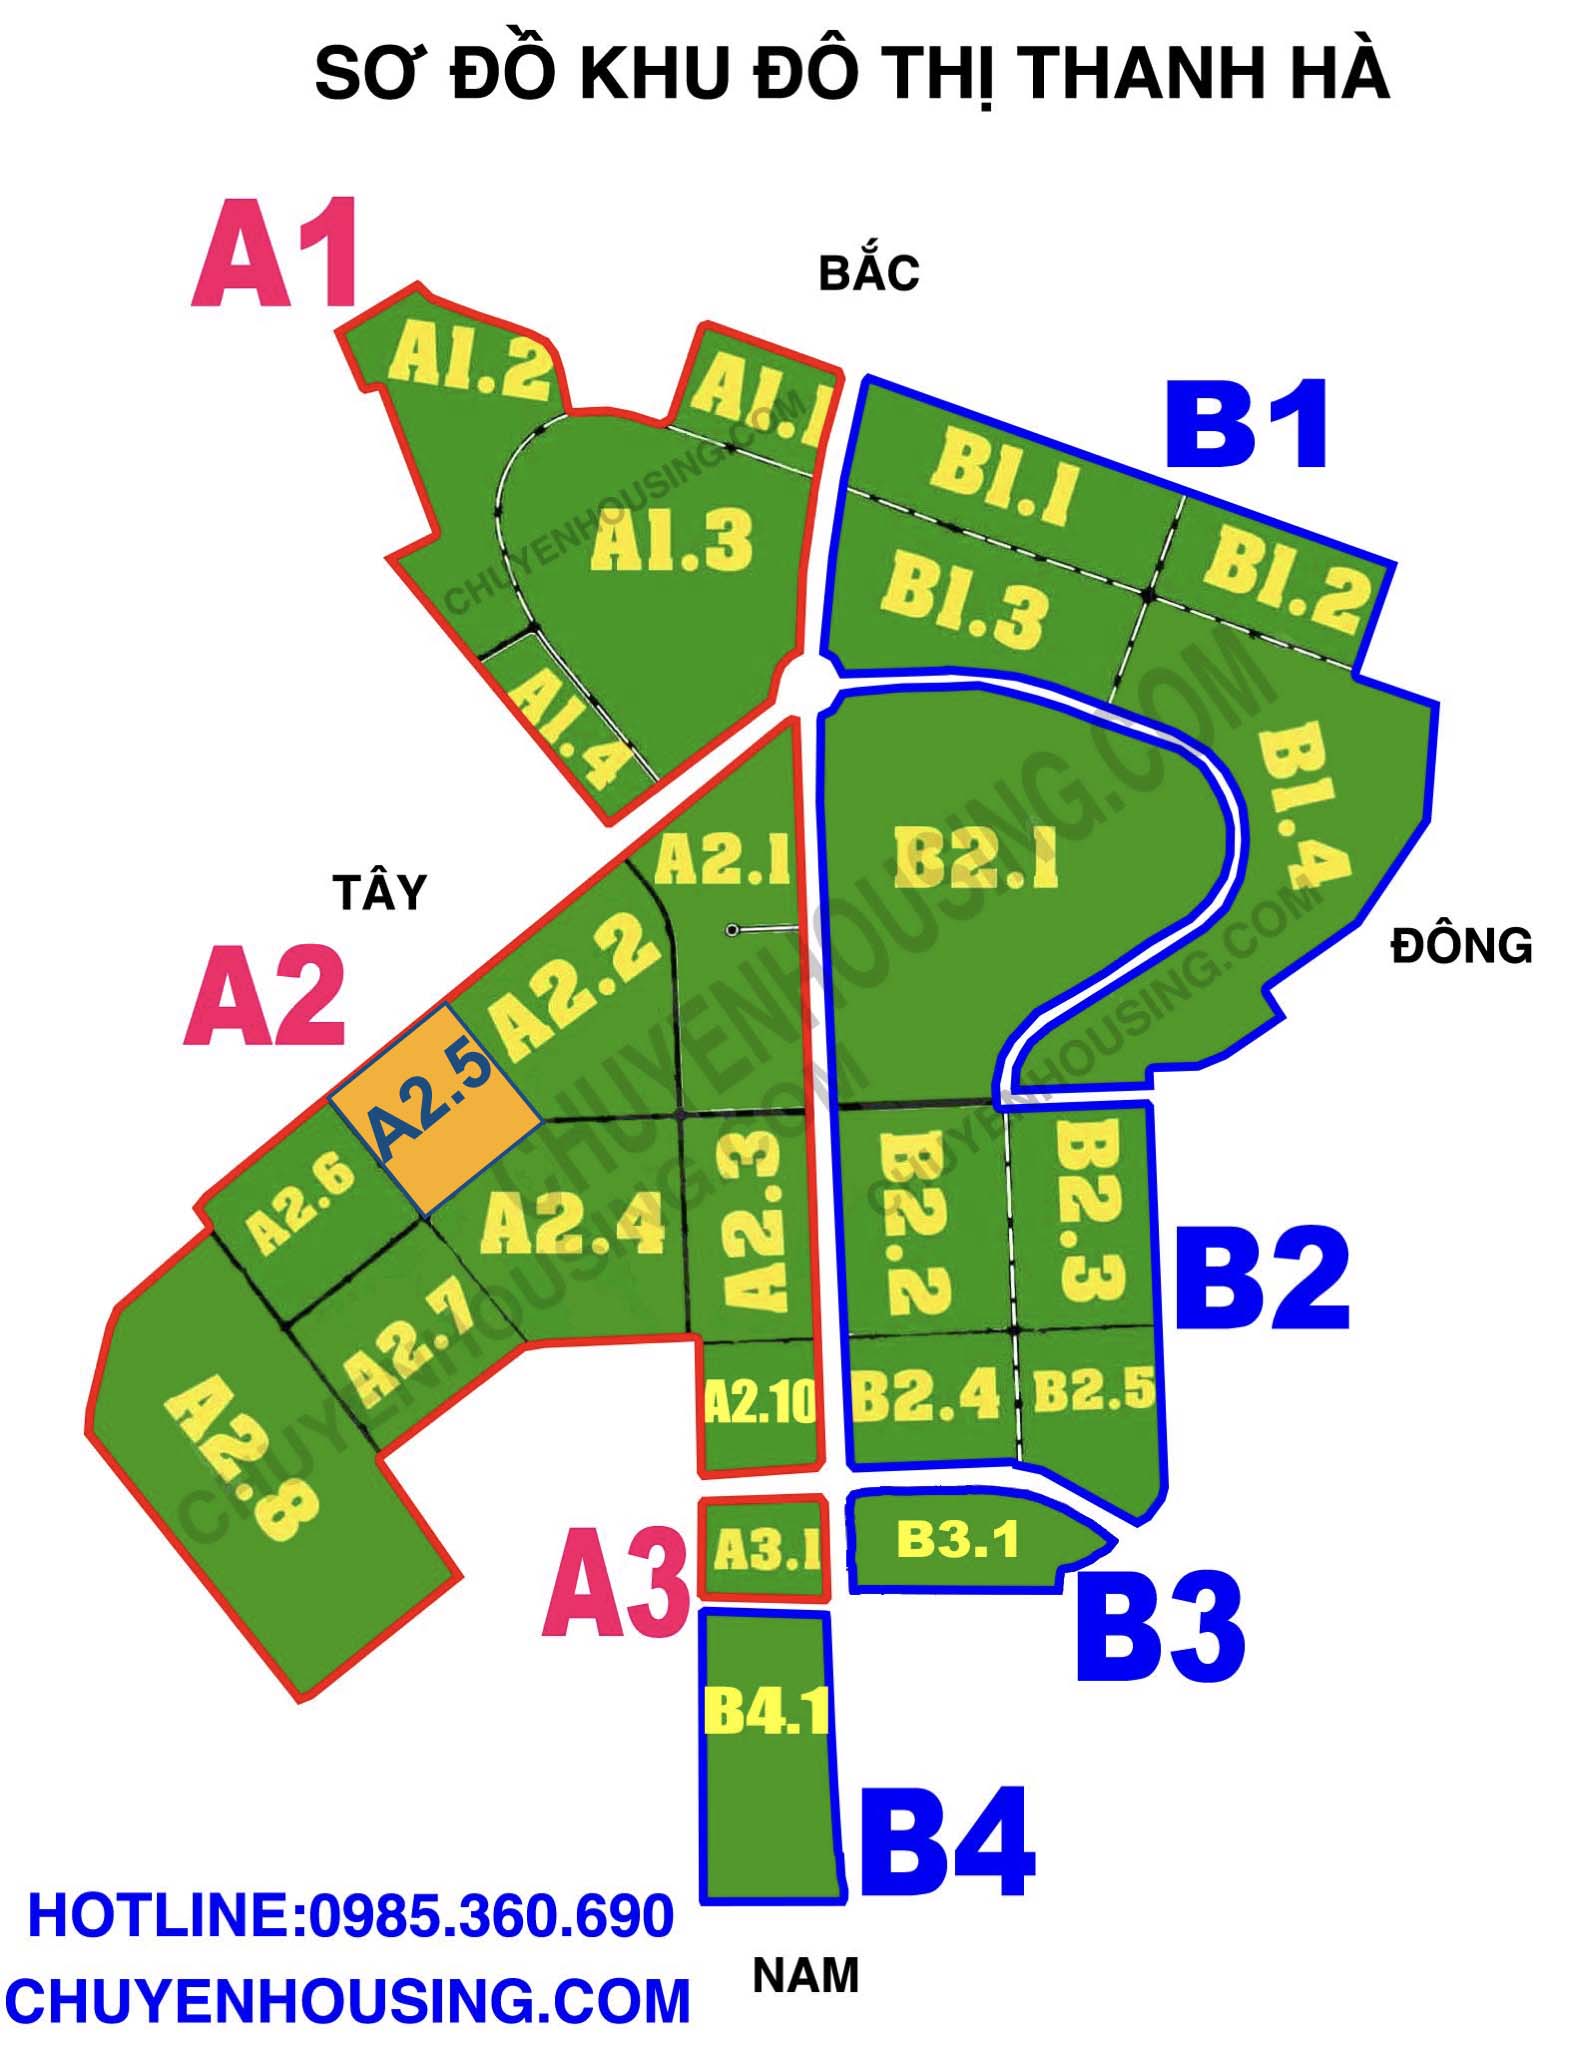 bản đồ quy hoạch khu đô thị thanh hà